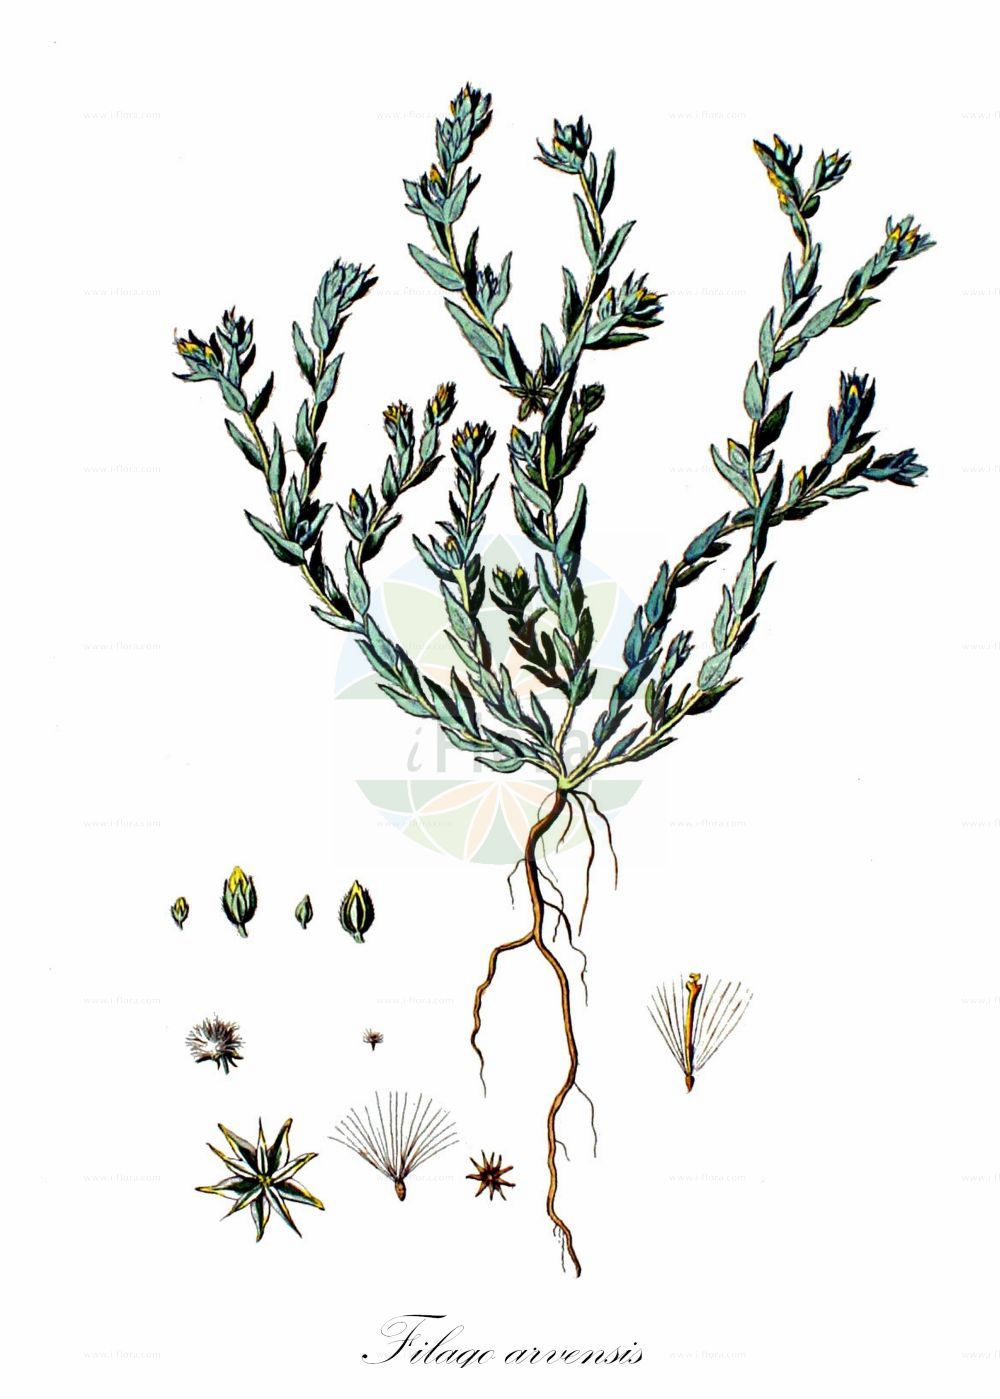 Historische Abbildung von Filago arvensis (Acker-Filzkraut - Field Cudweed). Das Bild zeigt Blatt, Bluete, Frucht und Same. ---- Historical Drawing of Filago arvensis (Acker-Filzkraut - Field Cudweed). The image is showing leaf, flower, fruit and seed.(Filago arvensis,Acker-Filzkraut,Field Cudweed,Filago alpestris,Filago arvensis,Filago lagopus,Gnaphalium arvense,Gnaphalium lagopus,Logfia arvensis,Oglifa arvensis,Acker-Filzkraut,Field Cudweed,Field Cottonrose,Least Cudweed,Filago,Filzkraut,Cottonrose,Asteraceae,Korbblütengewächse,Daisy family,Blatt,Bluete,Frucht,Same,leaf,flower,fruit,seed,Kops (1800-1934))